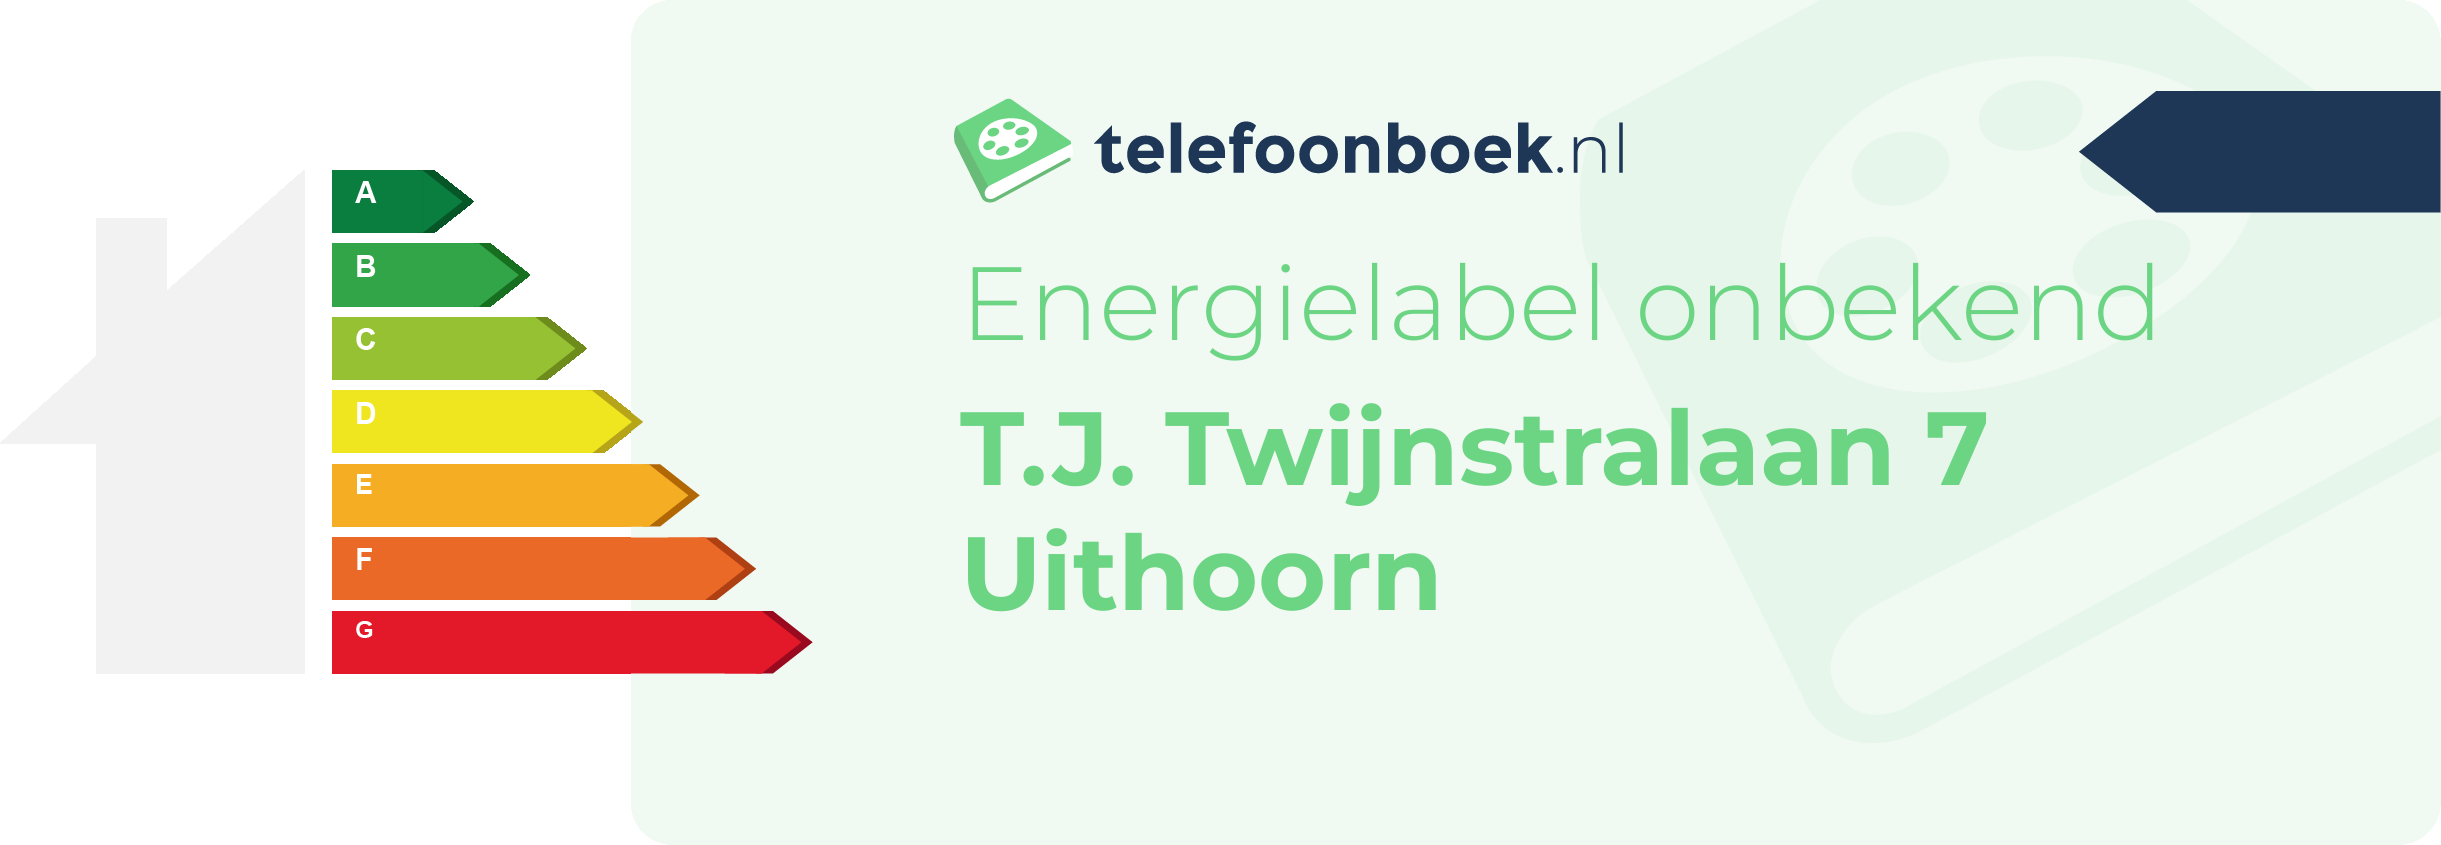 Energielabel T.J. Twijnstralaan 7 Uithoorn